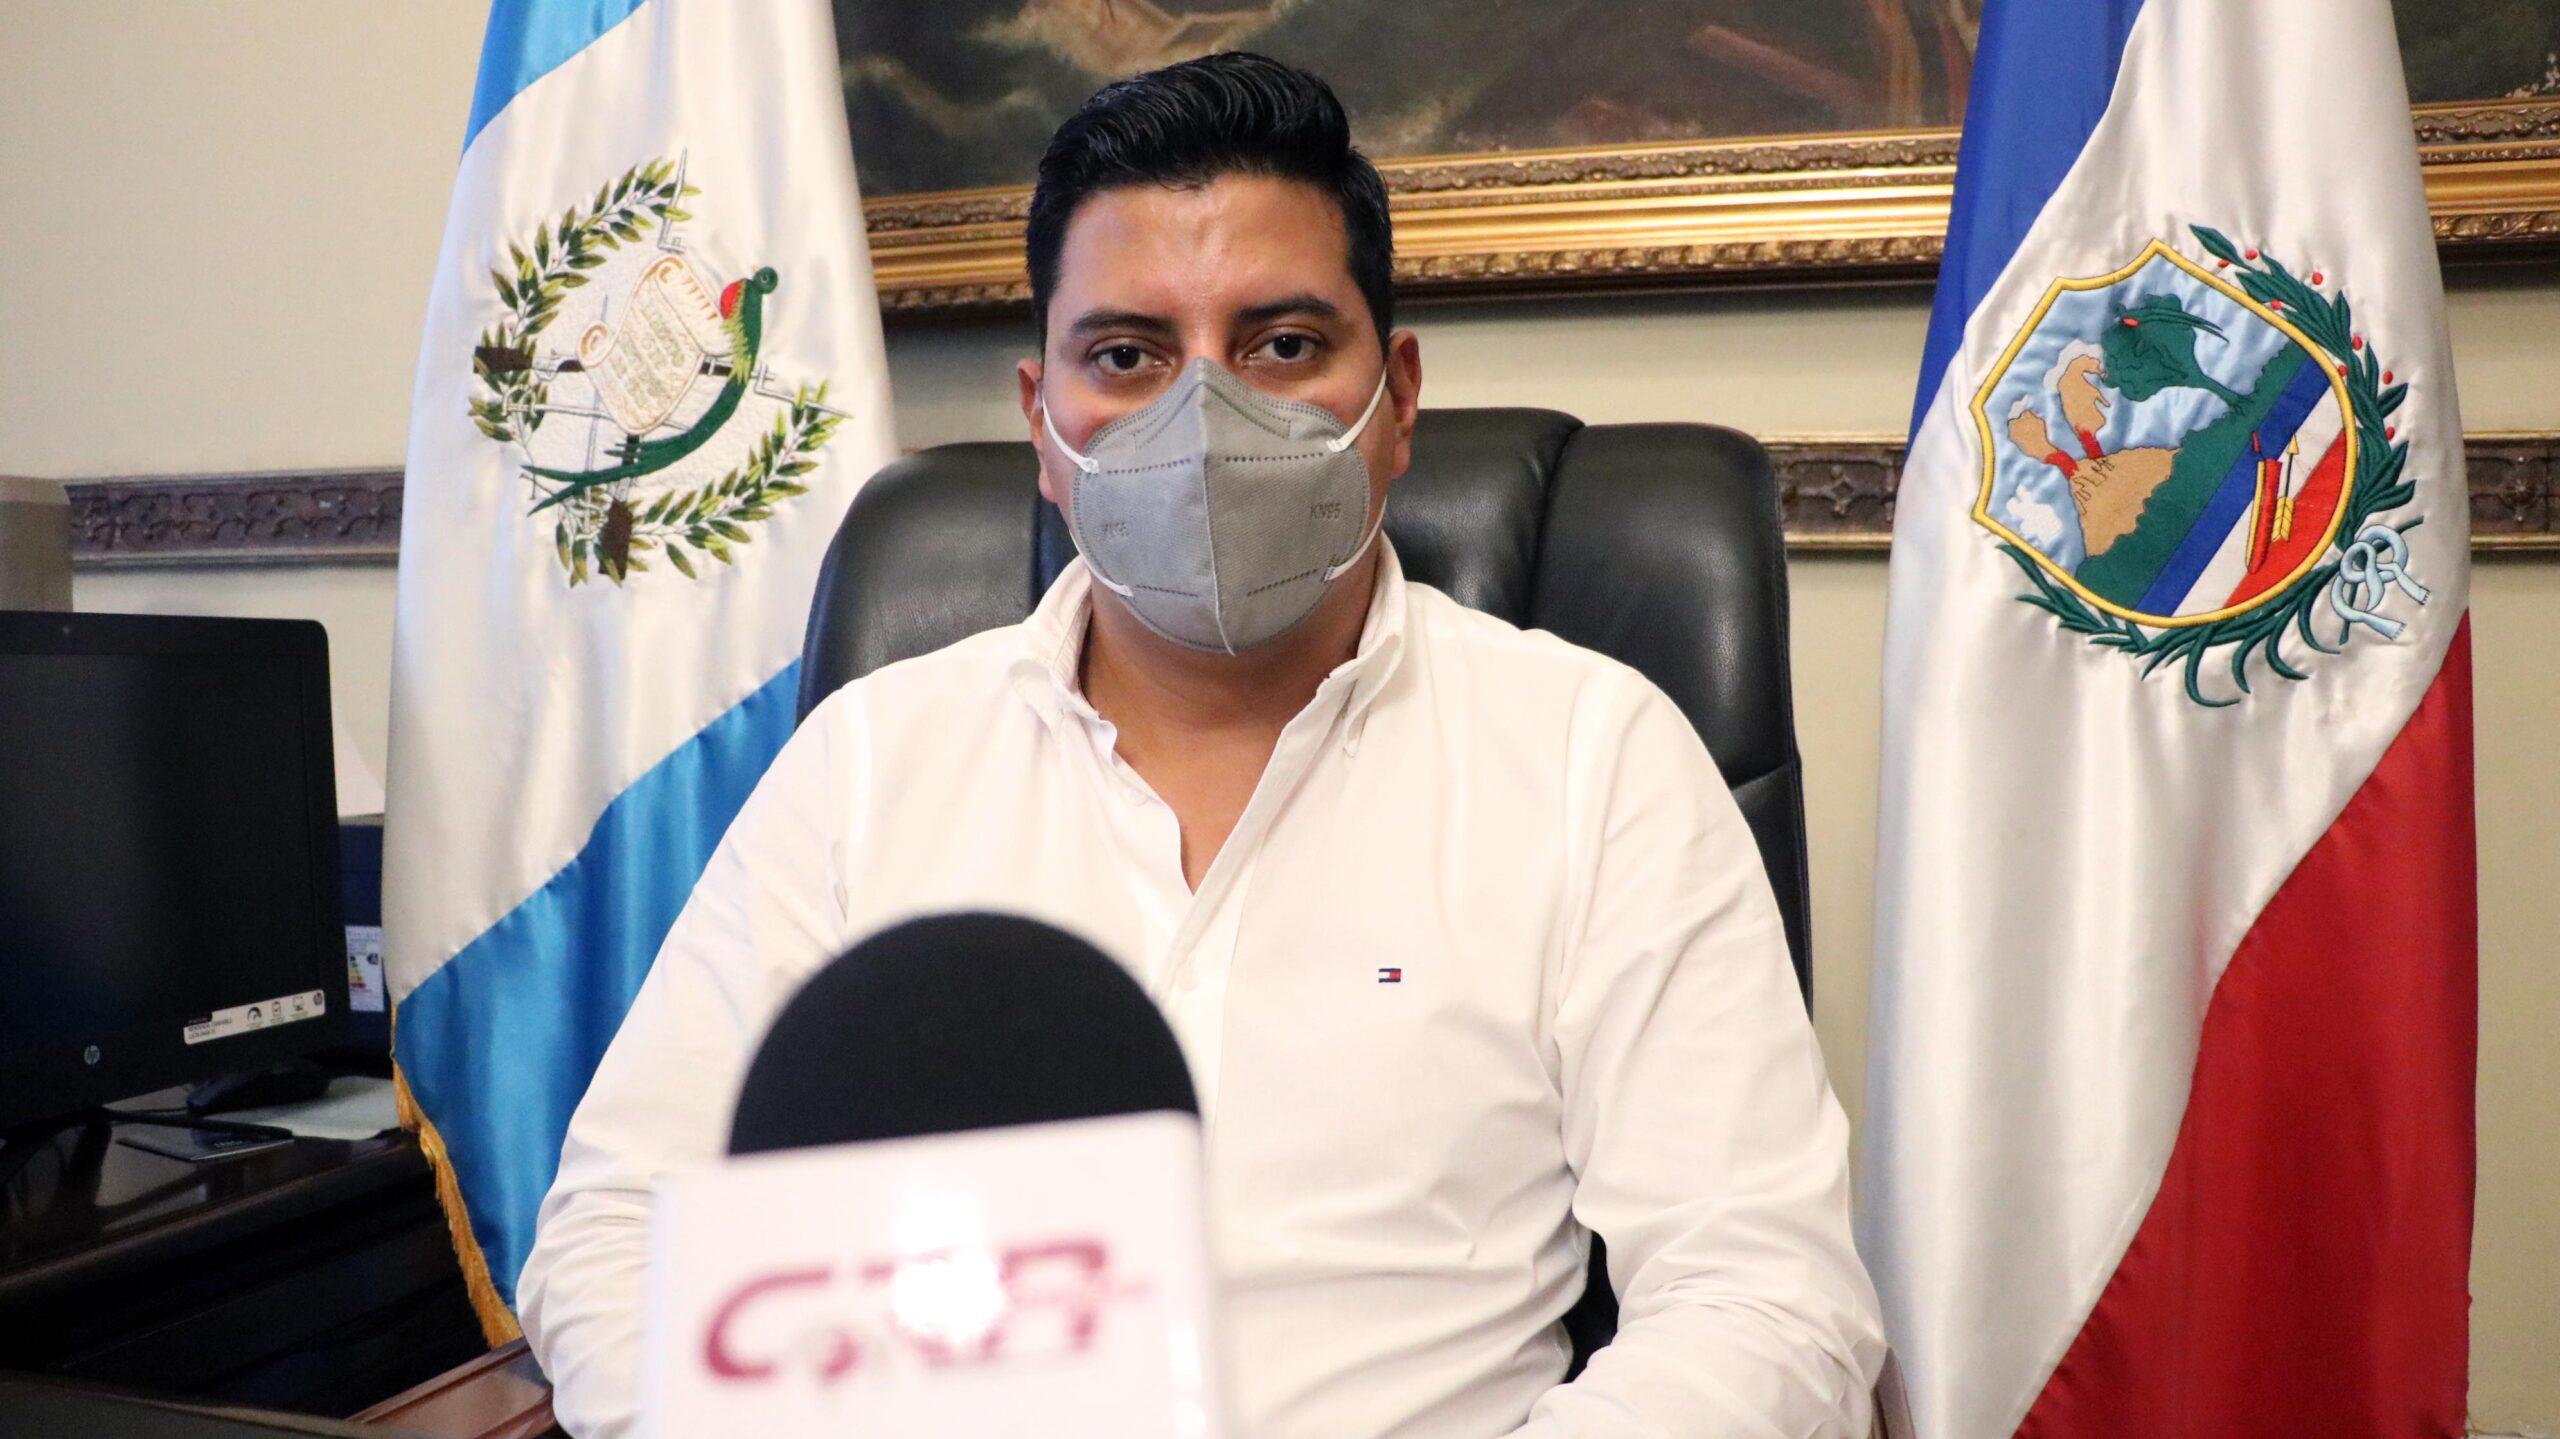 Gobernador de Quetzaltenango renuncia al cargo luego de dos años en el puesto